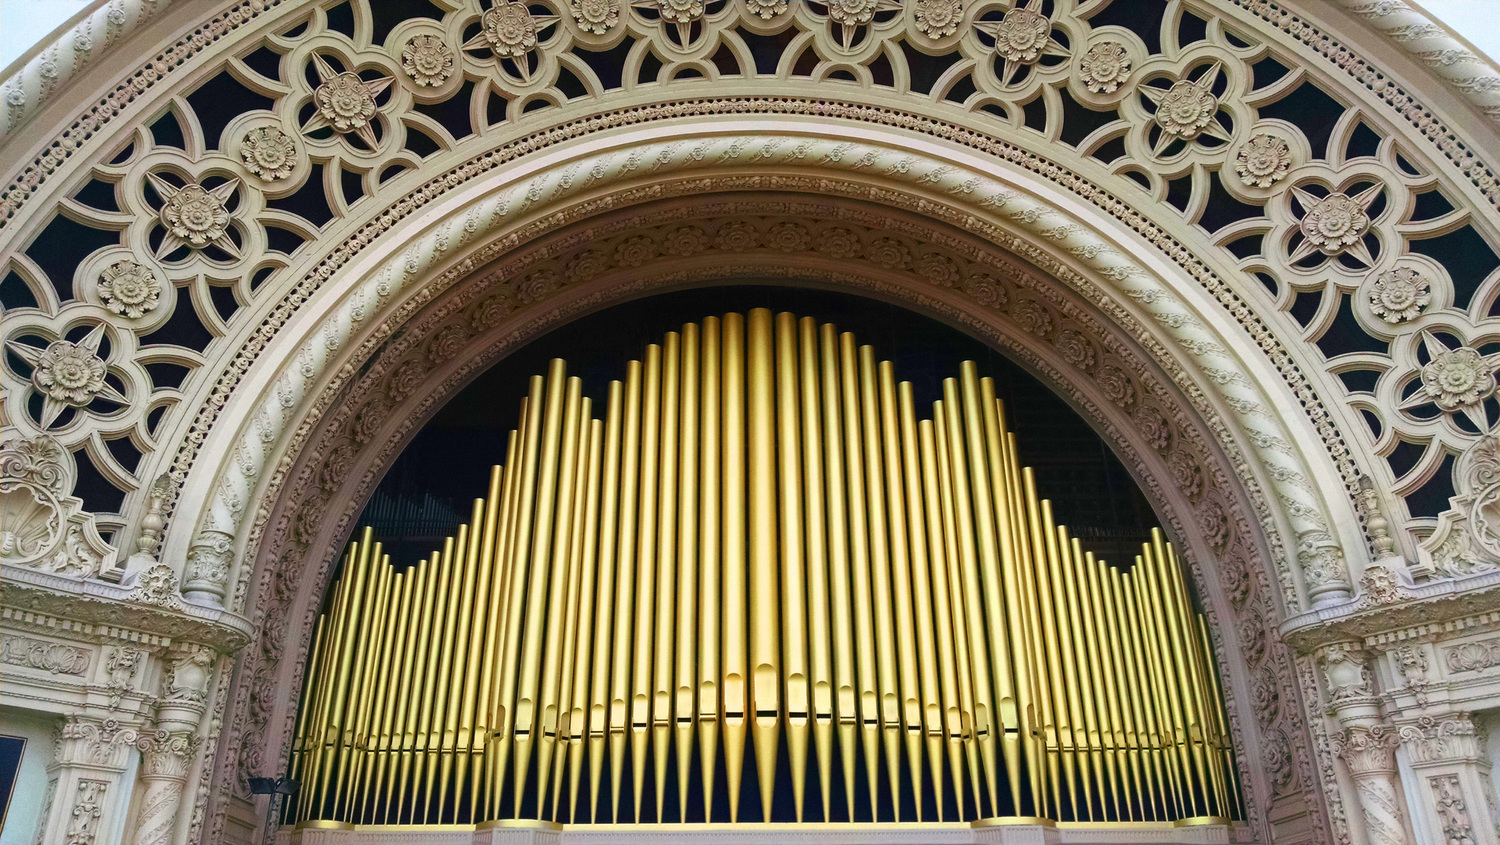 The Spreckels Organ